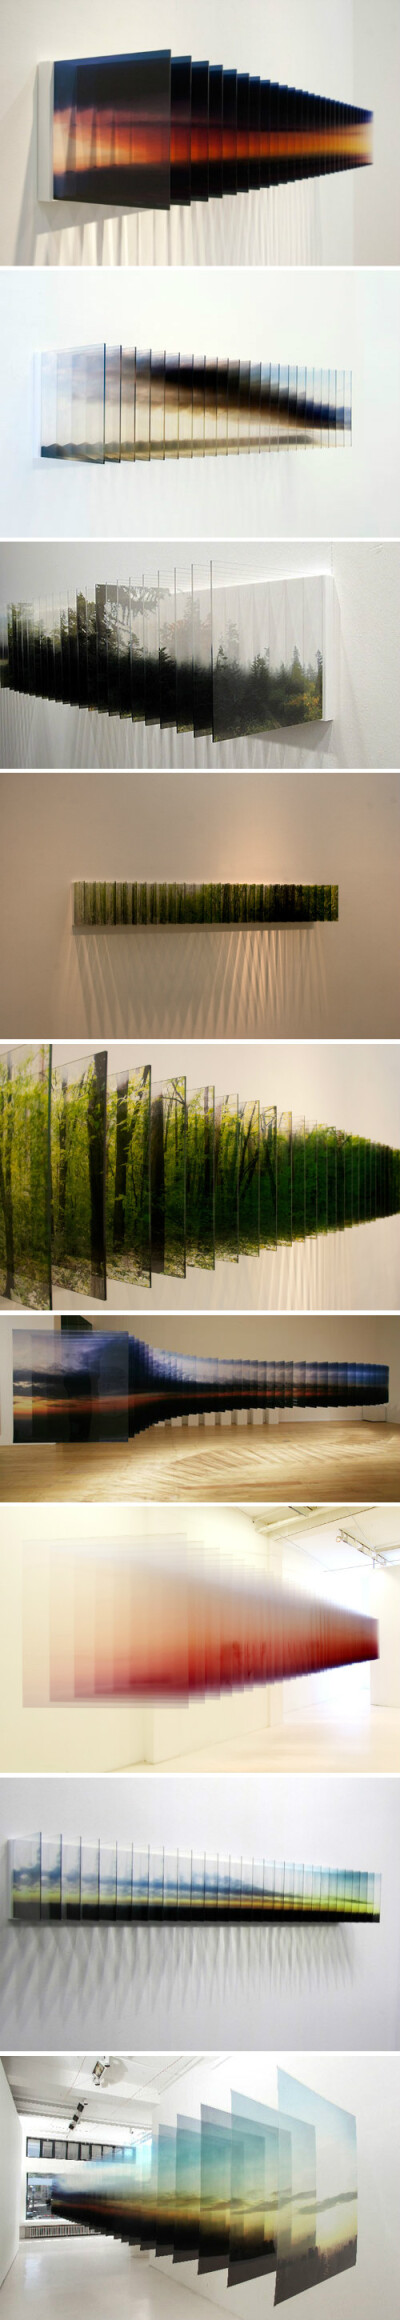 日本艺术家 Nobuhiro Nakanishi 的装置作品『Layer Drawings』（切片图像），艺术家以切片叠加的方式诠释时间、空间、记忆的主题。